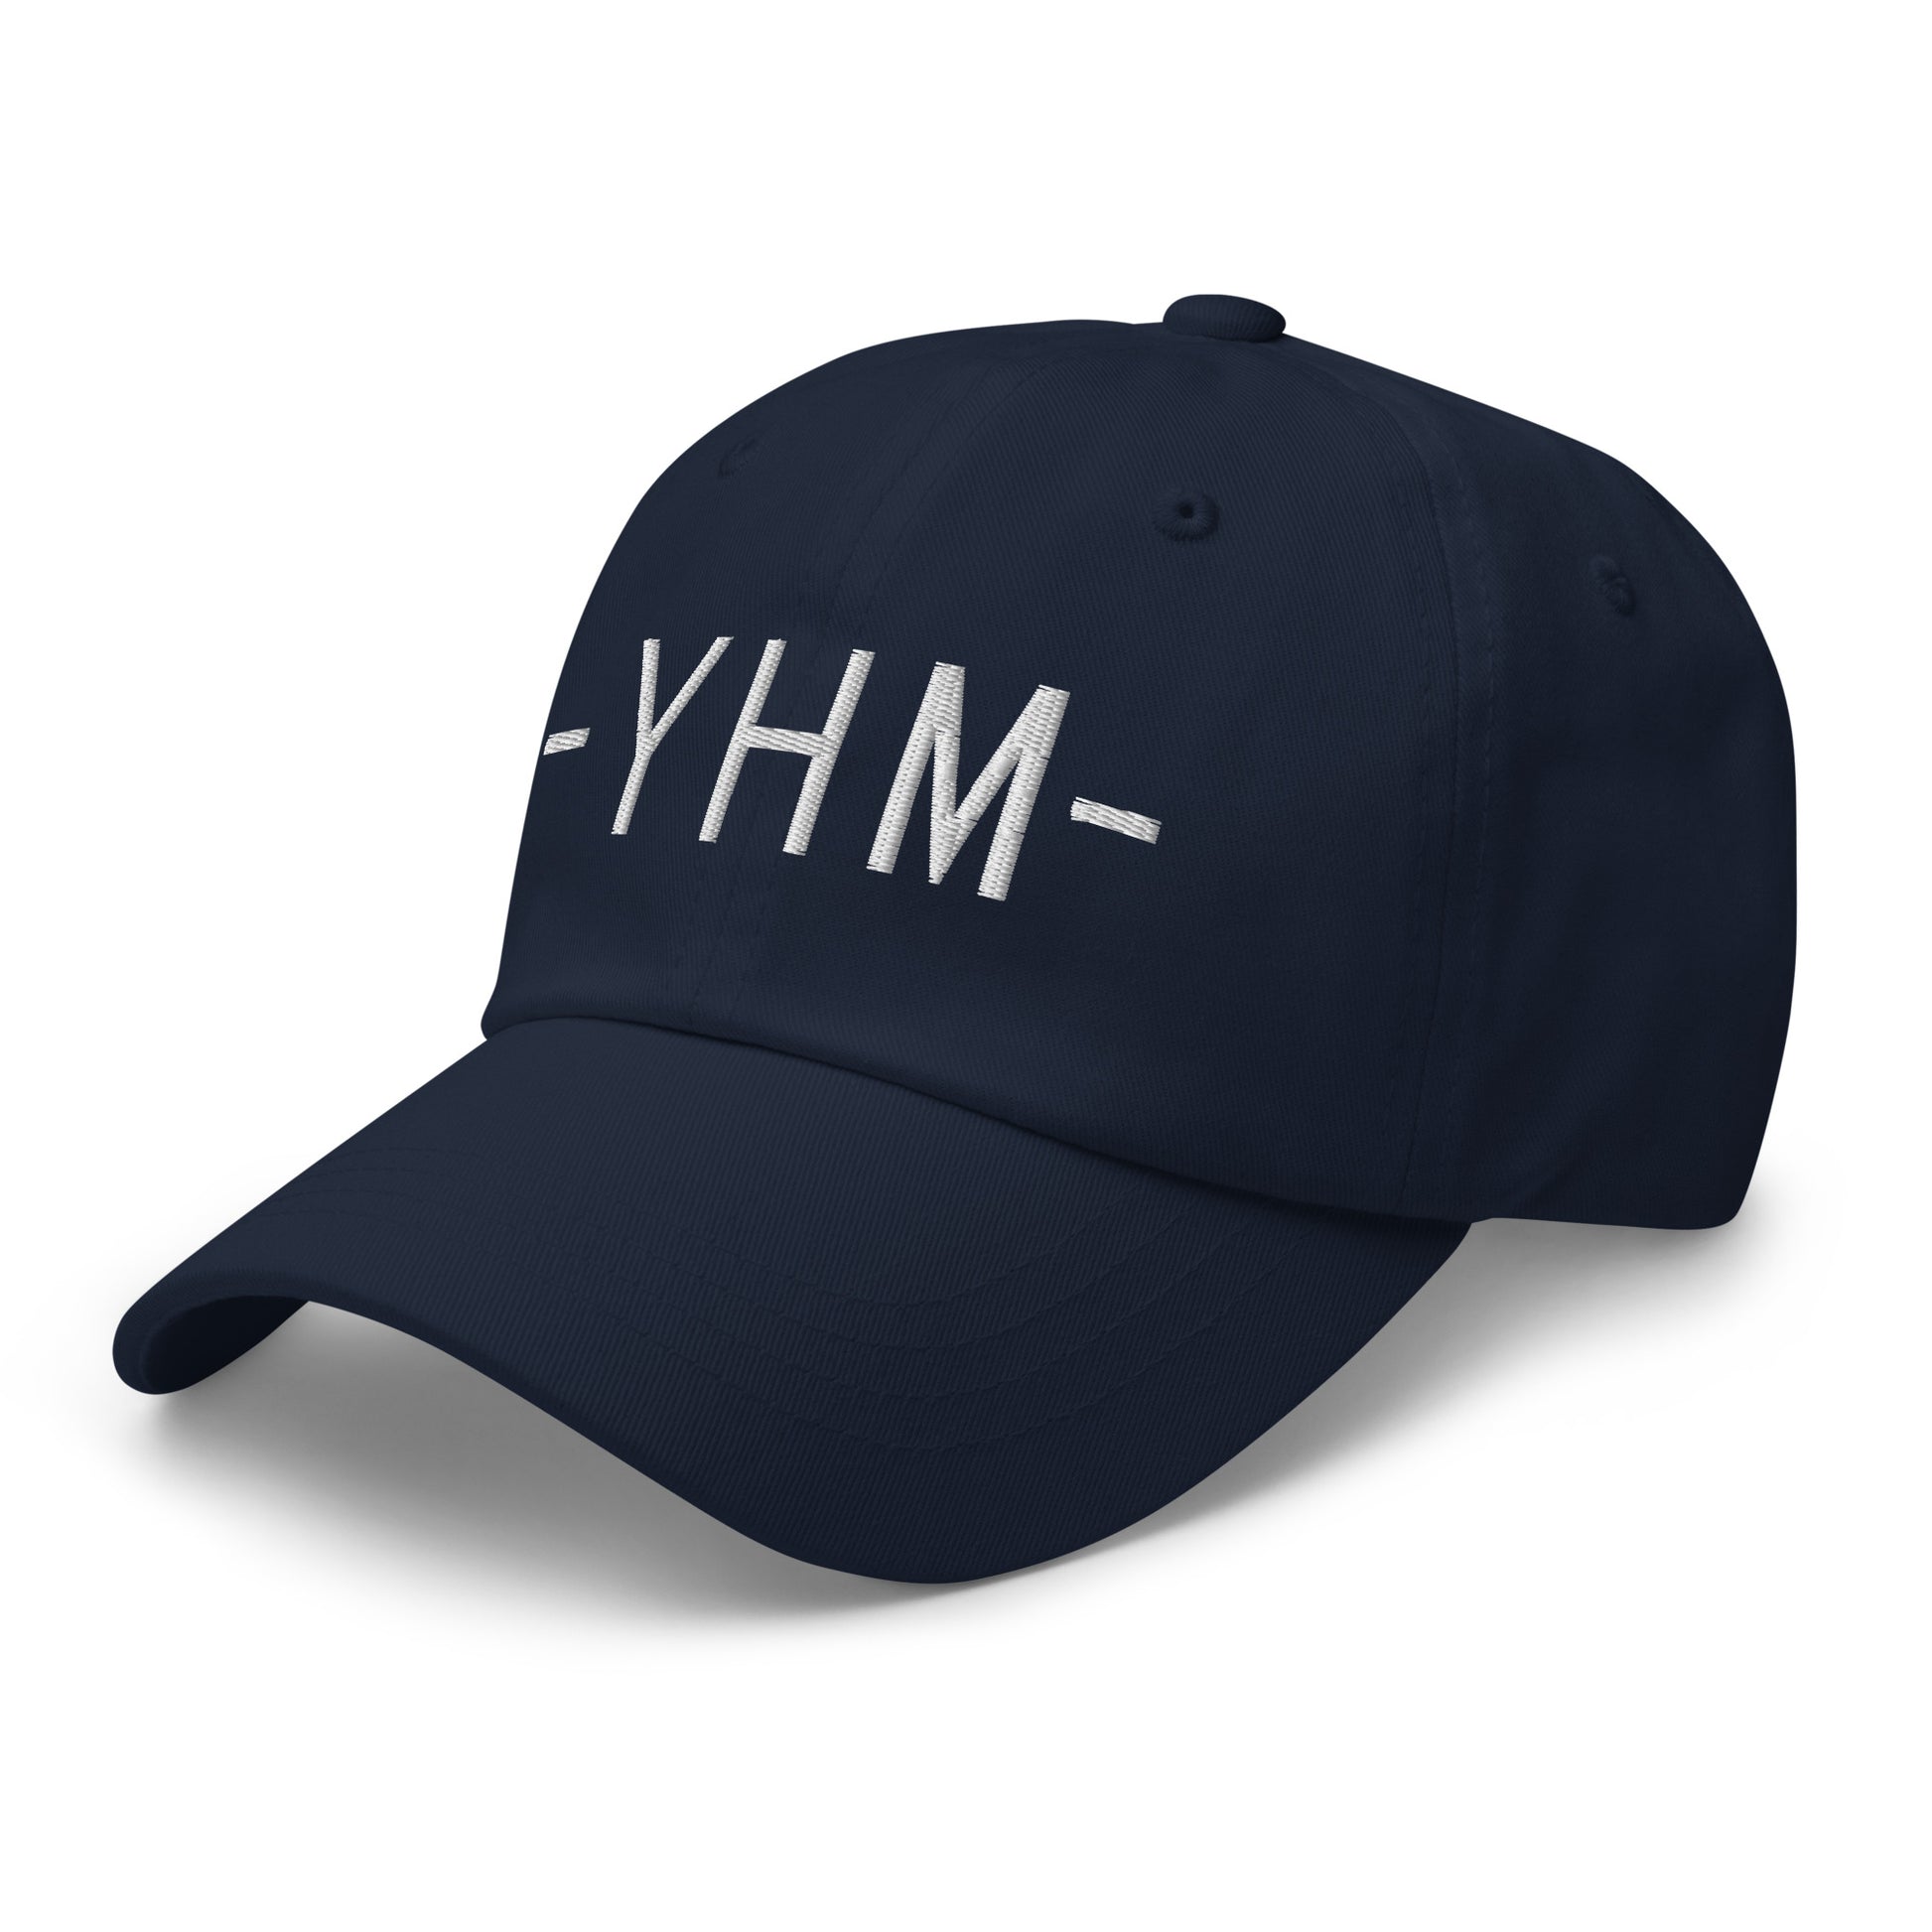 Souvenir Baseball Cap - White • YHM Hamilton • YHM Designs - Image 15